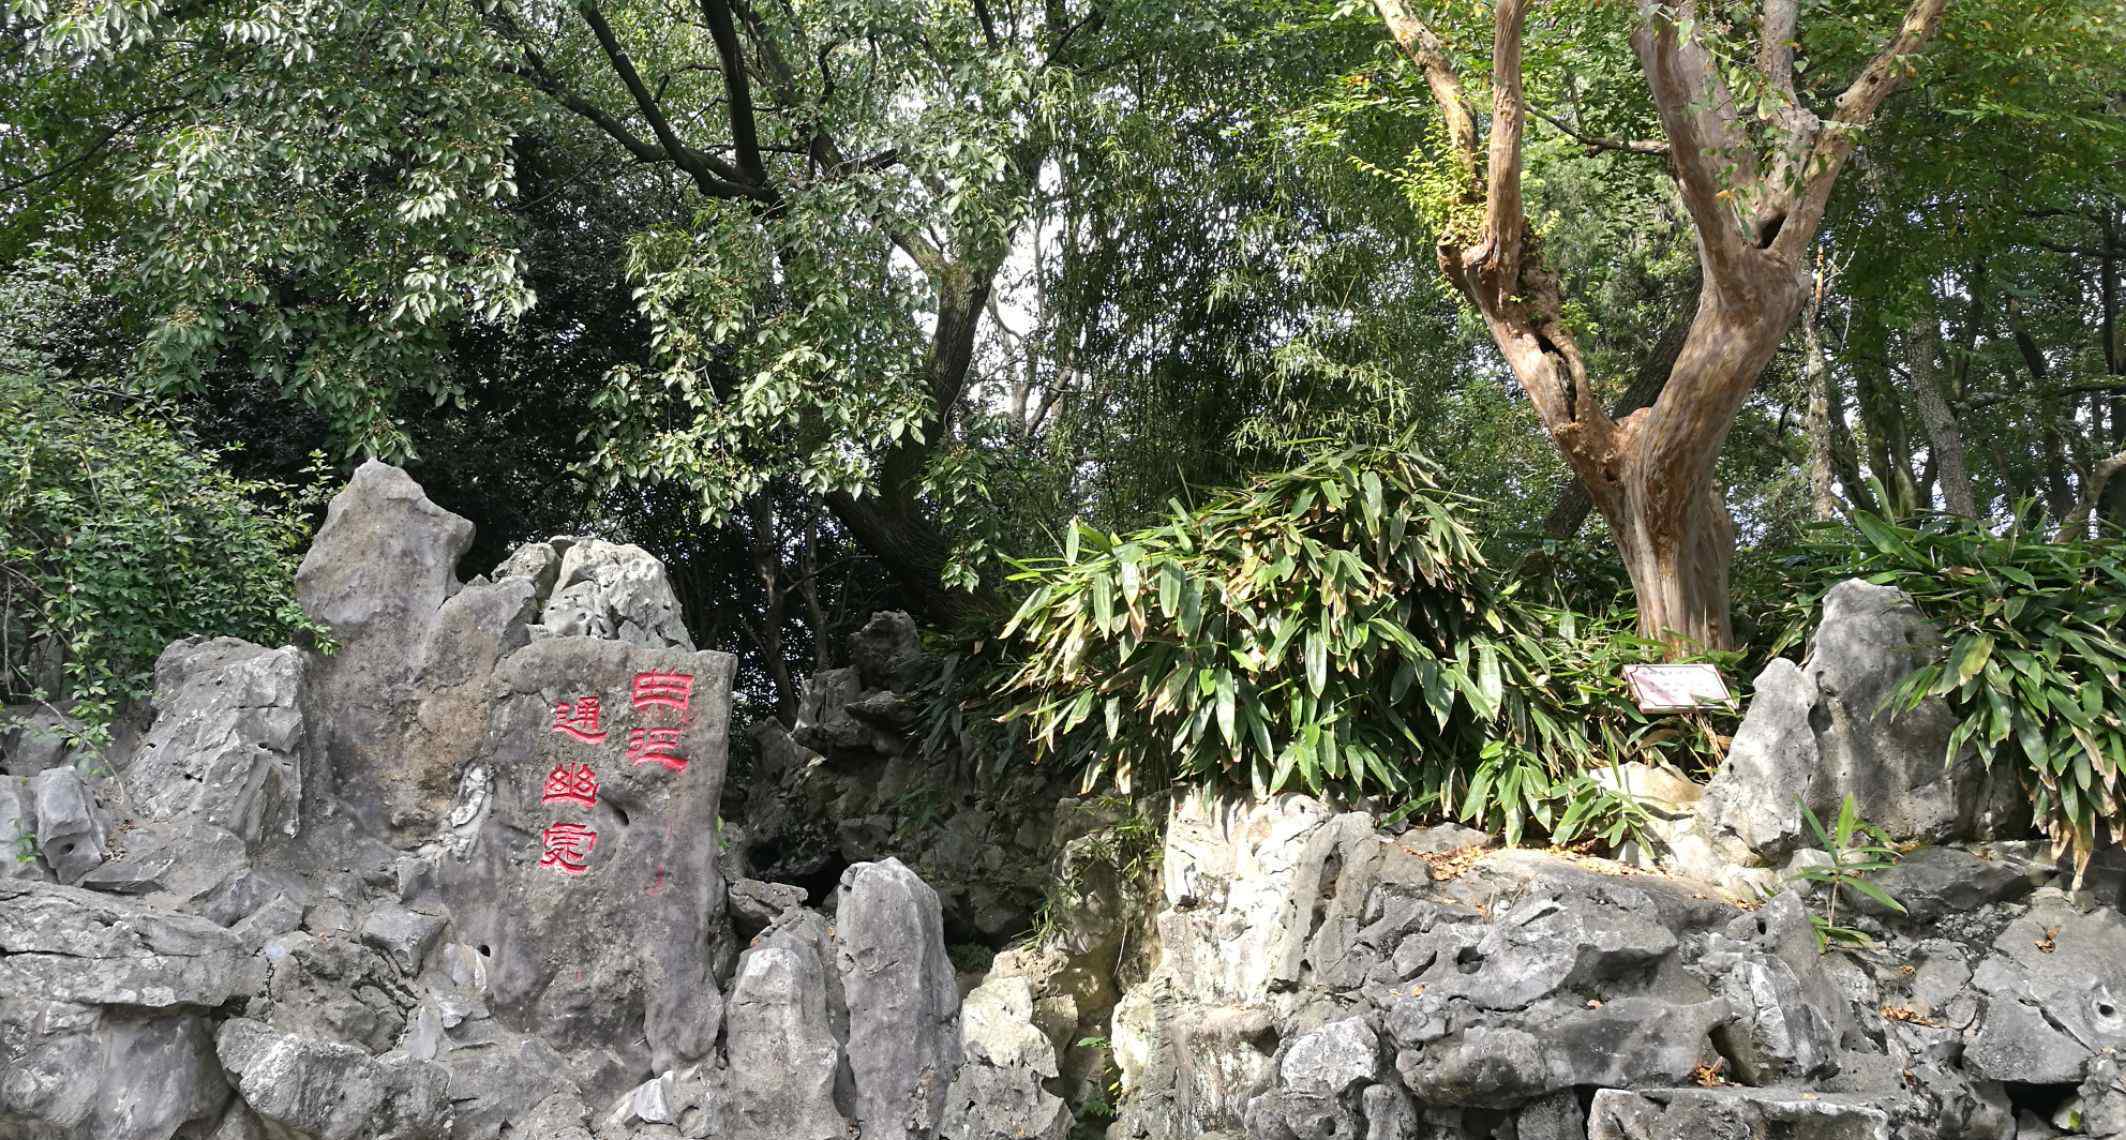 蘅芜苑 粗制滥造违背原著的上海大观园，与北京大观园对比，是个拙劣的山寨版。